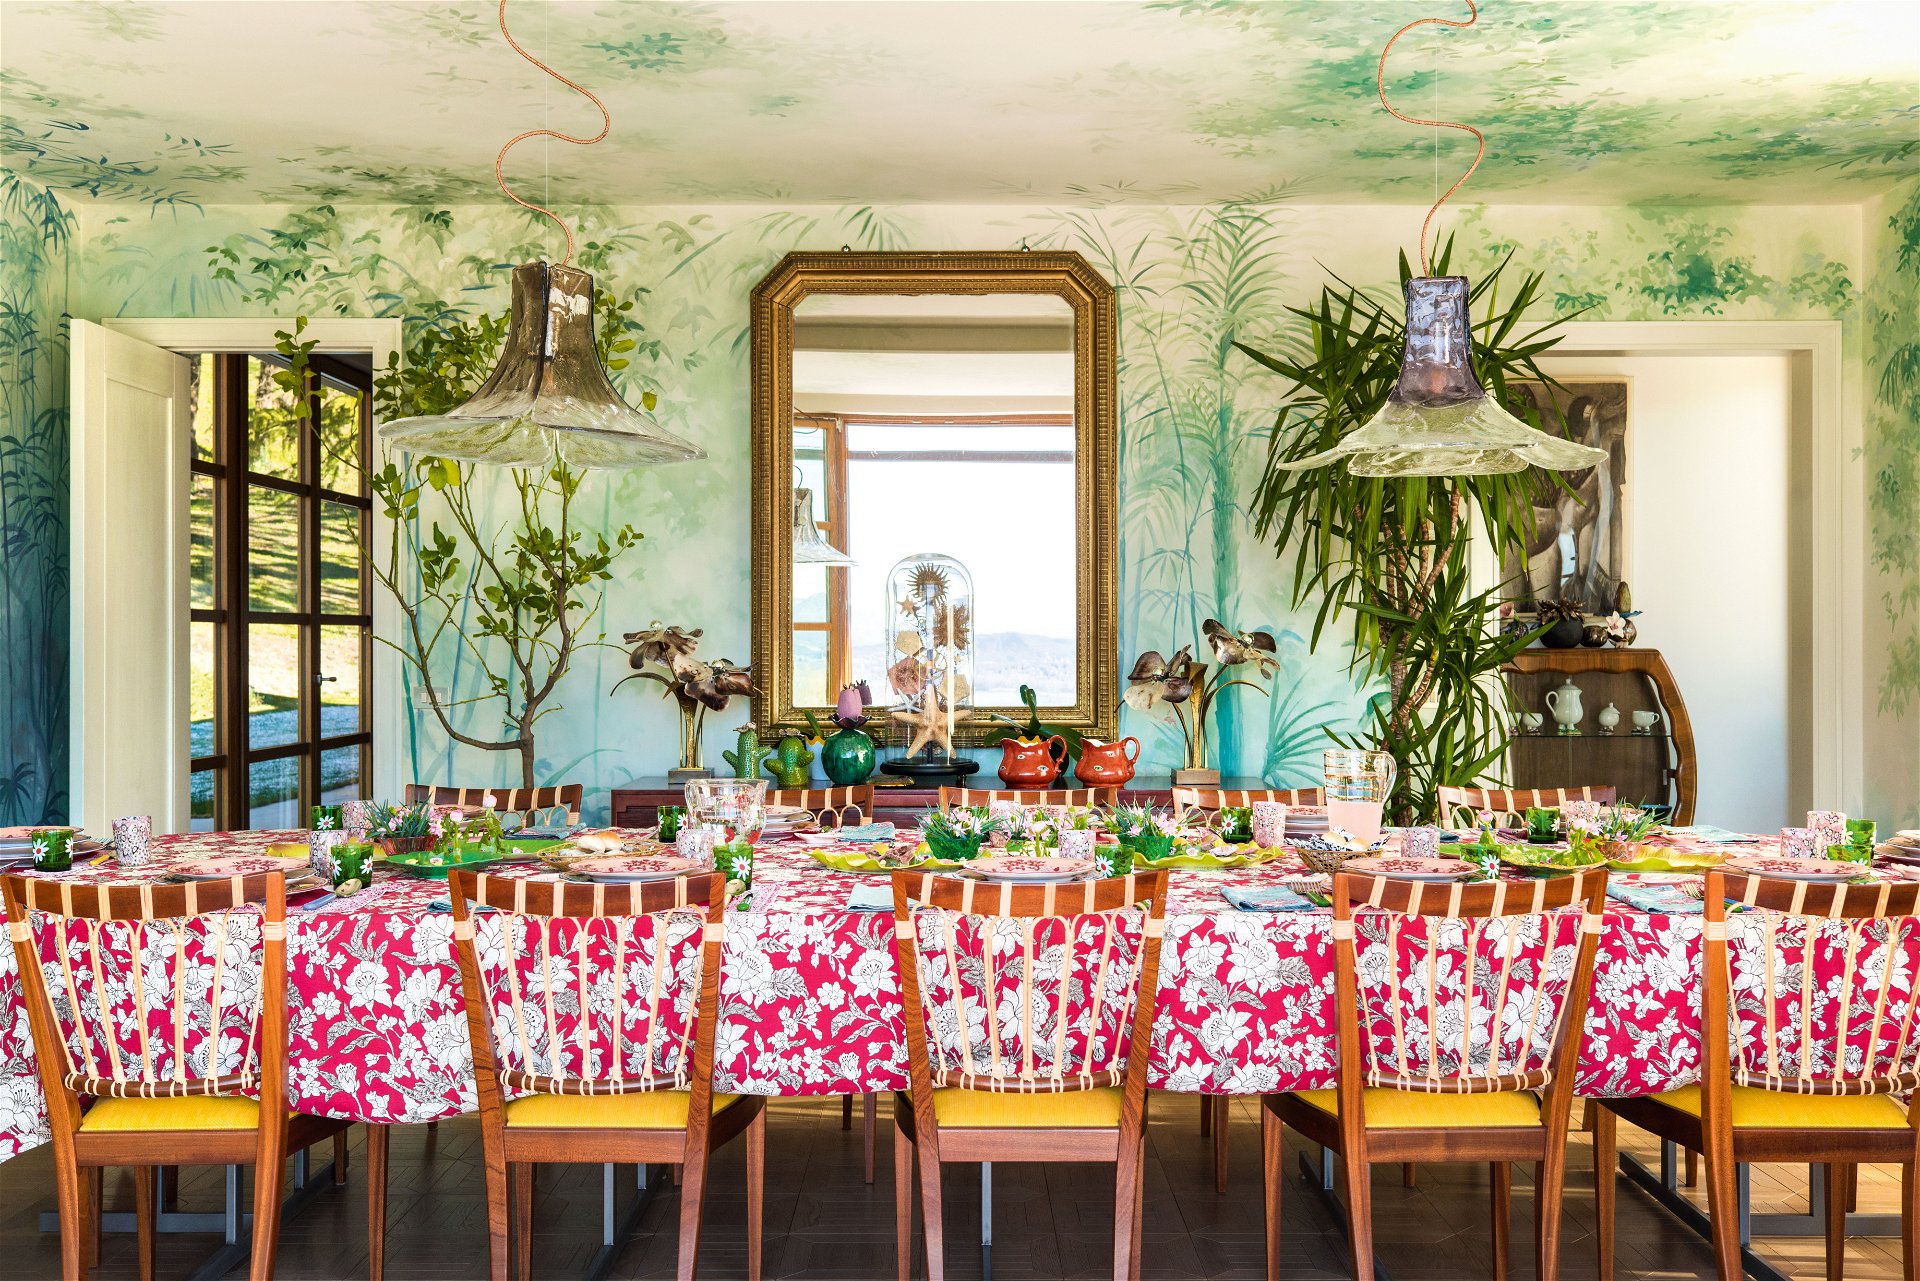 Frühstück im Grünen: Das Esszimmer verwandelt sich dank des maßgefertigten Wand­gemäldes in ein romantisches Gewächshaus. Entworfen wurde es von Pictalab Studio aus Mailand.